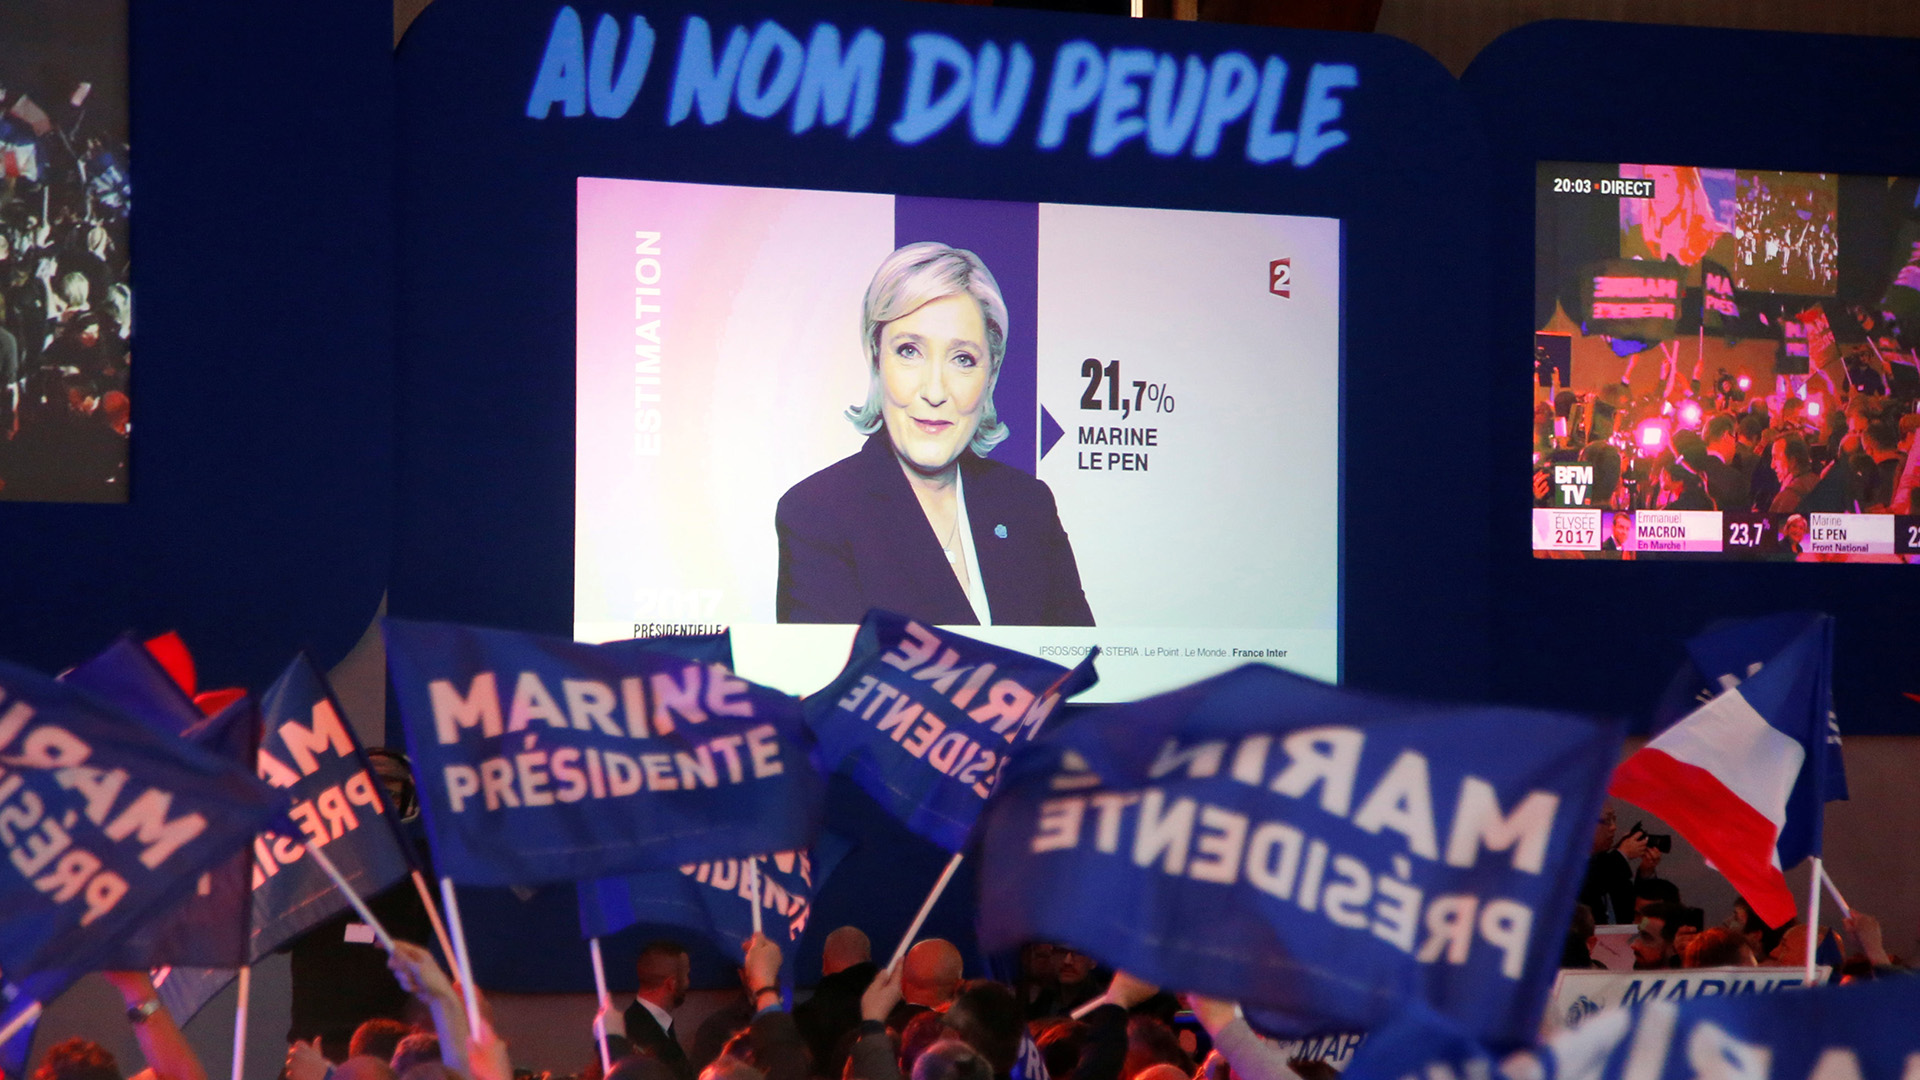 Marine Le Pen, del Frente Nacional de Francia, movimiento populista de ultraderecha (Charles Platiau/Reuters)